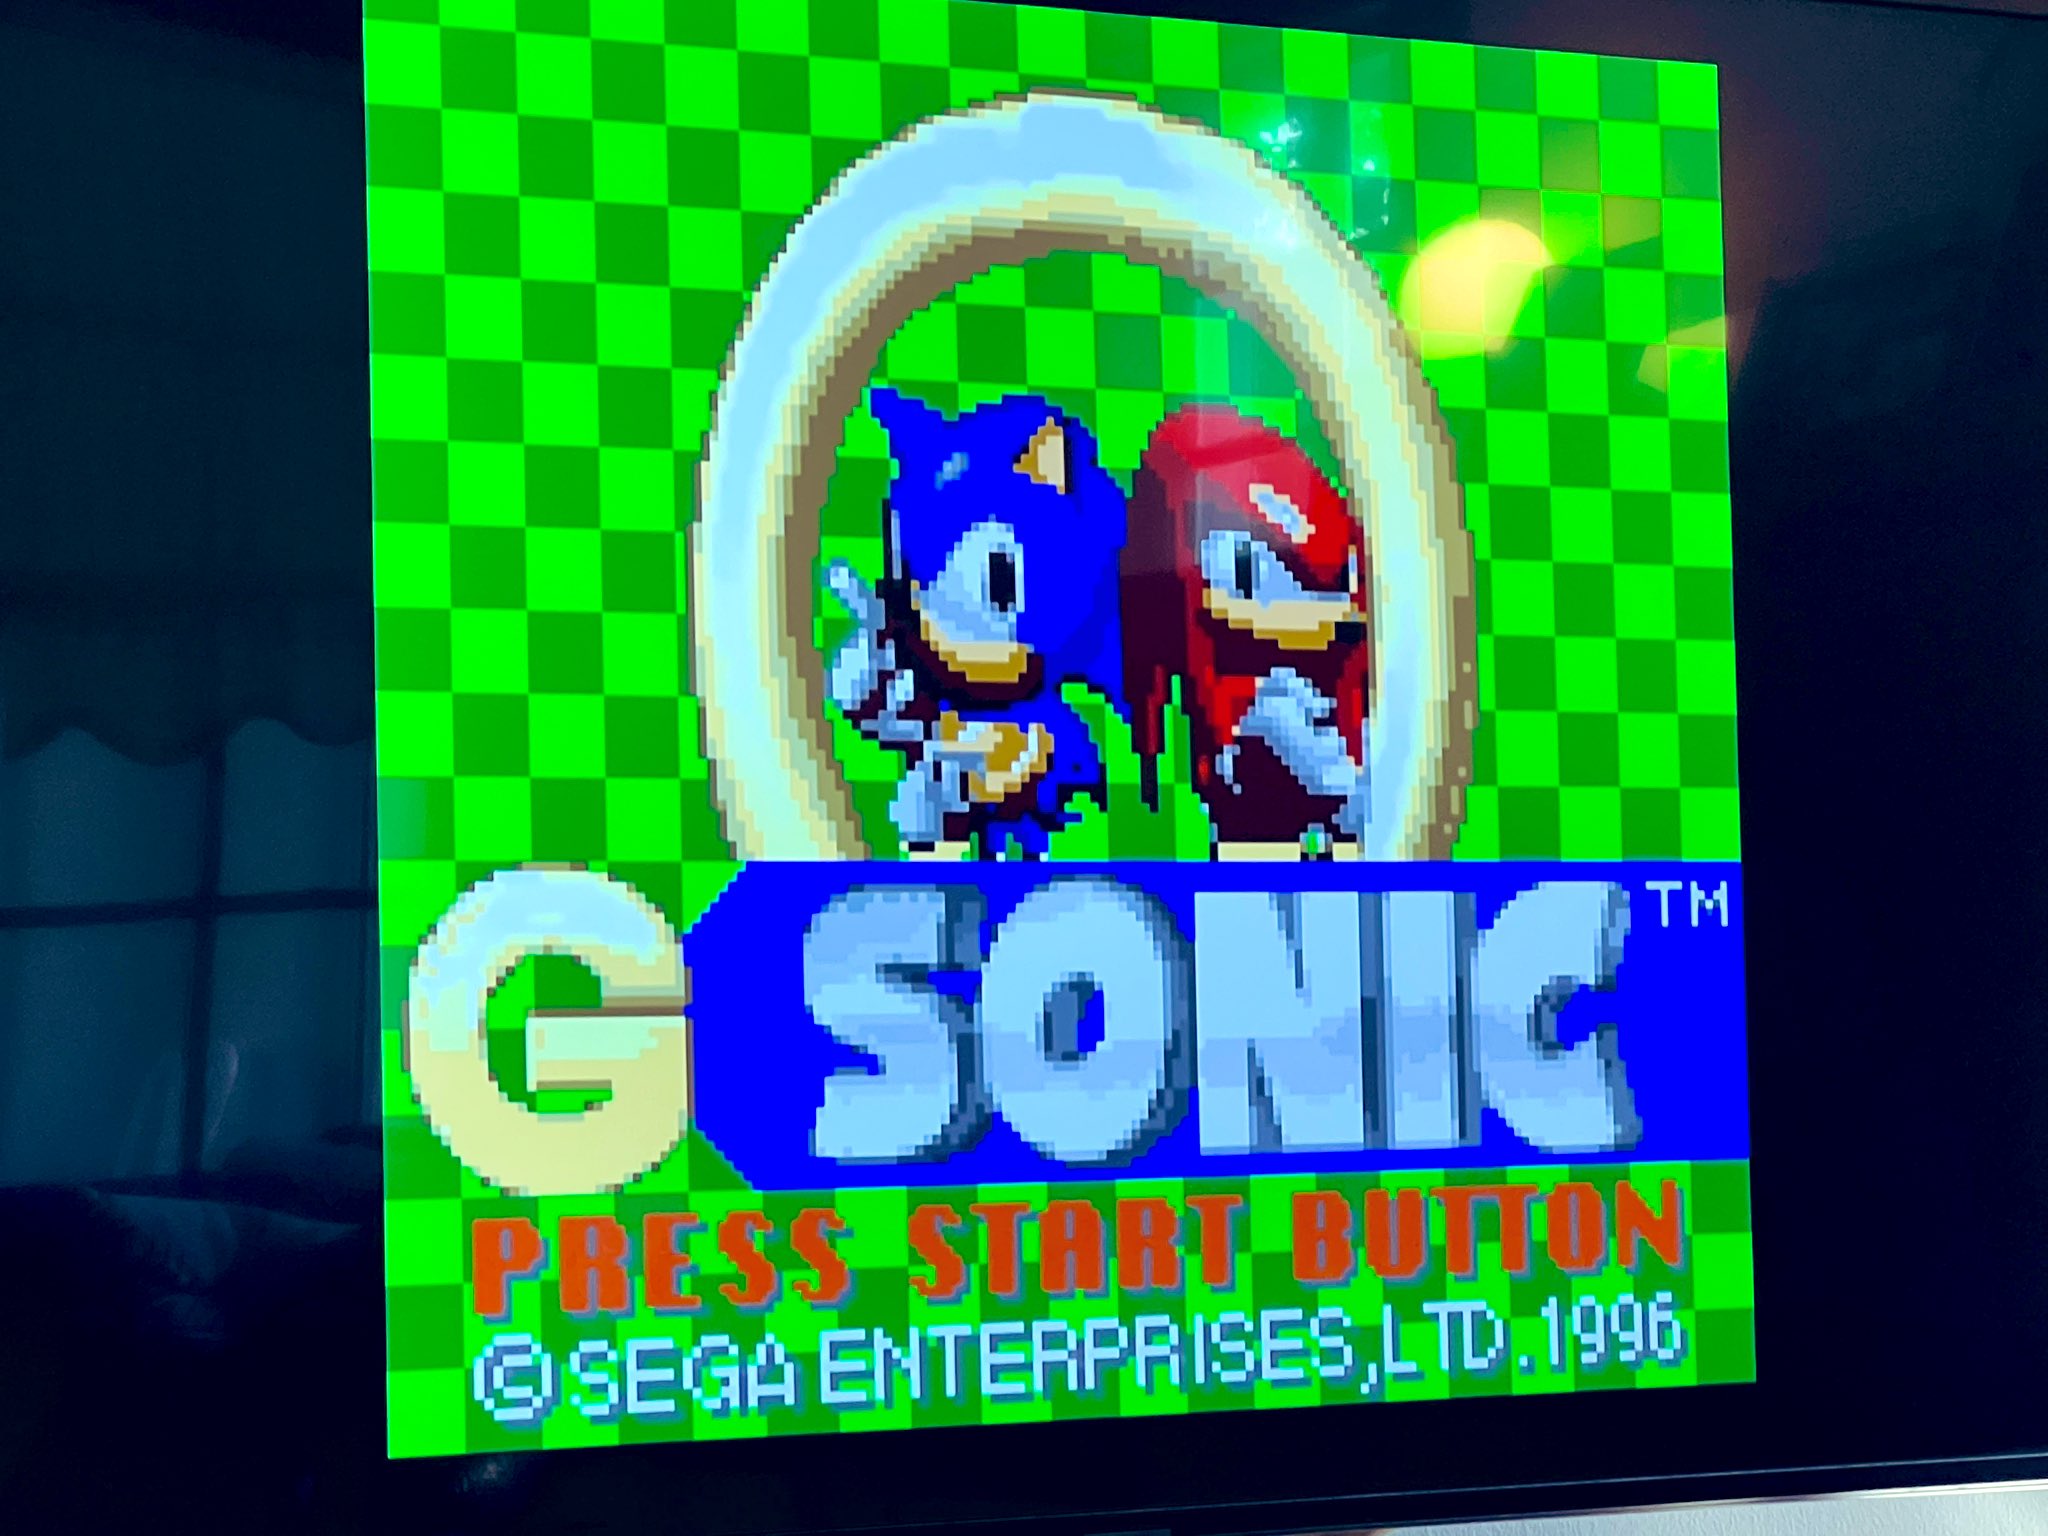 Sonic Origins » SEGAbits - #1 Source for SEGA News